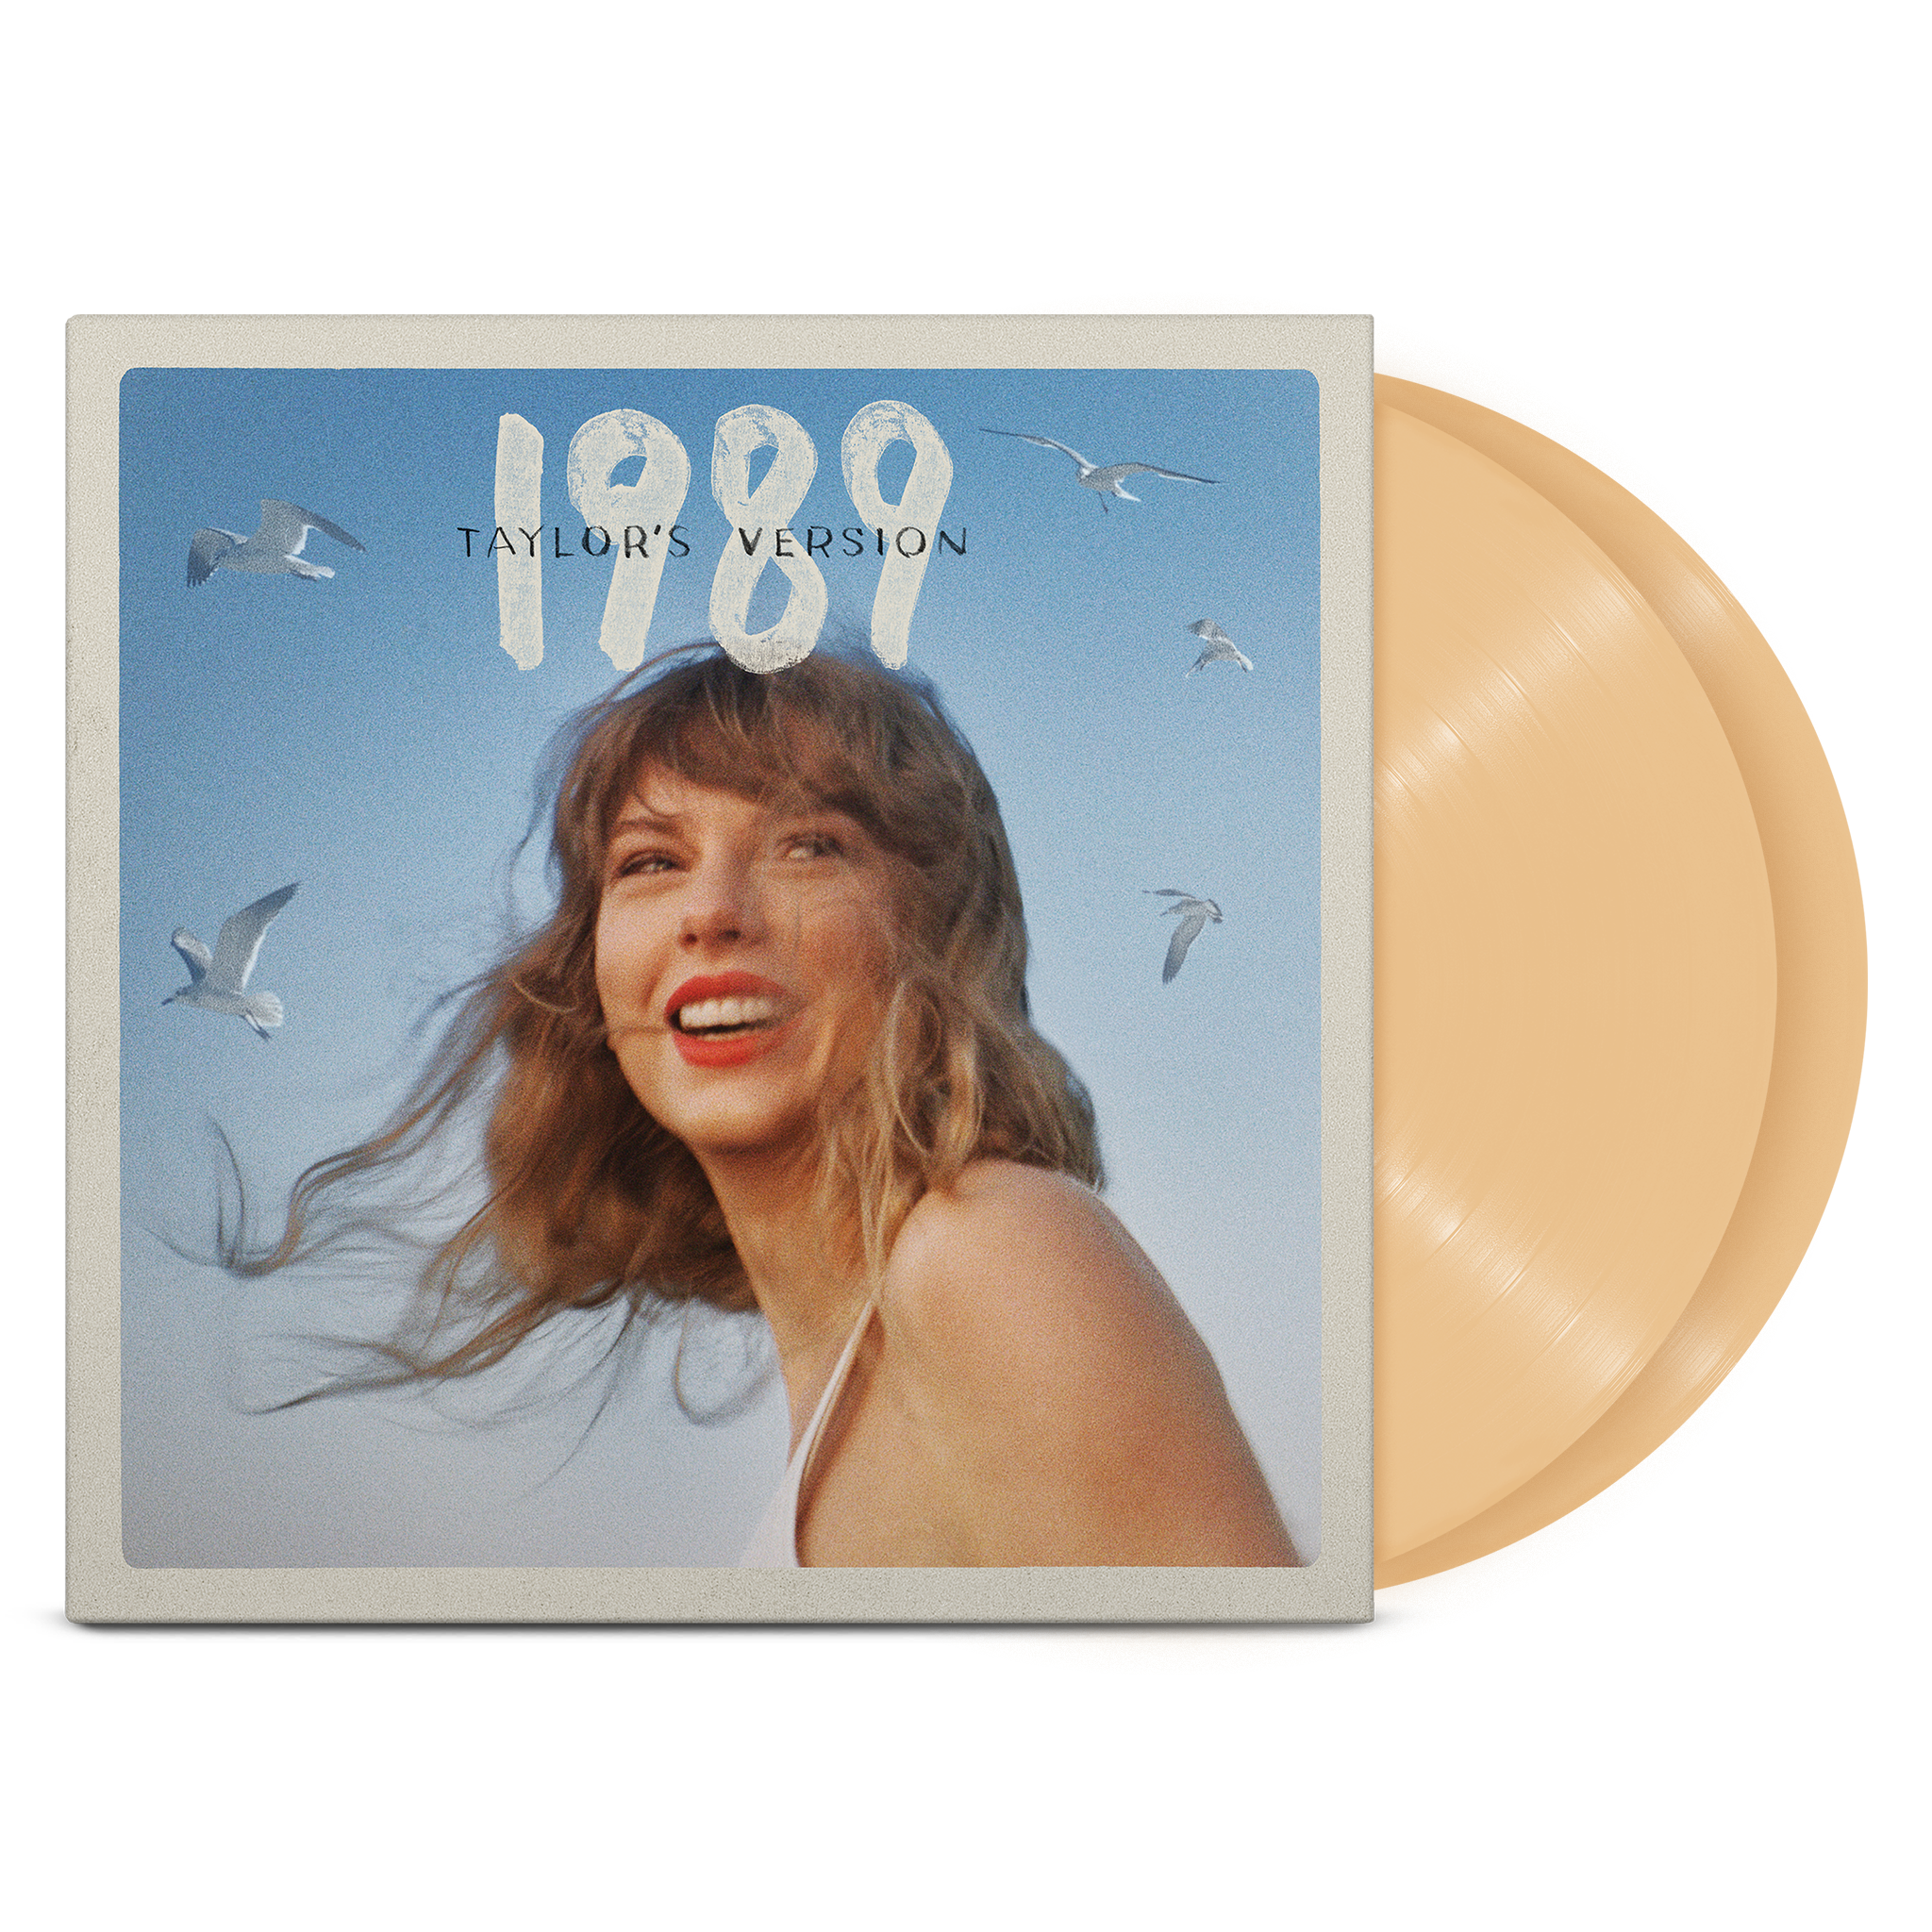 https://images.bravado.de/prod/product-assets/product-asset-data/taylor-swift/taylor-swift/products/504986/web/403031/image-thumb__403031__3000x3000_original/Taylor-Swift-1989-Taylor-s-Version-Vinyl-Album-Tangerine-504986-403031.png